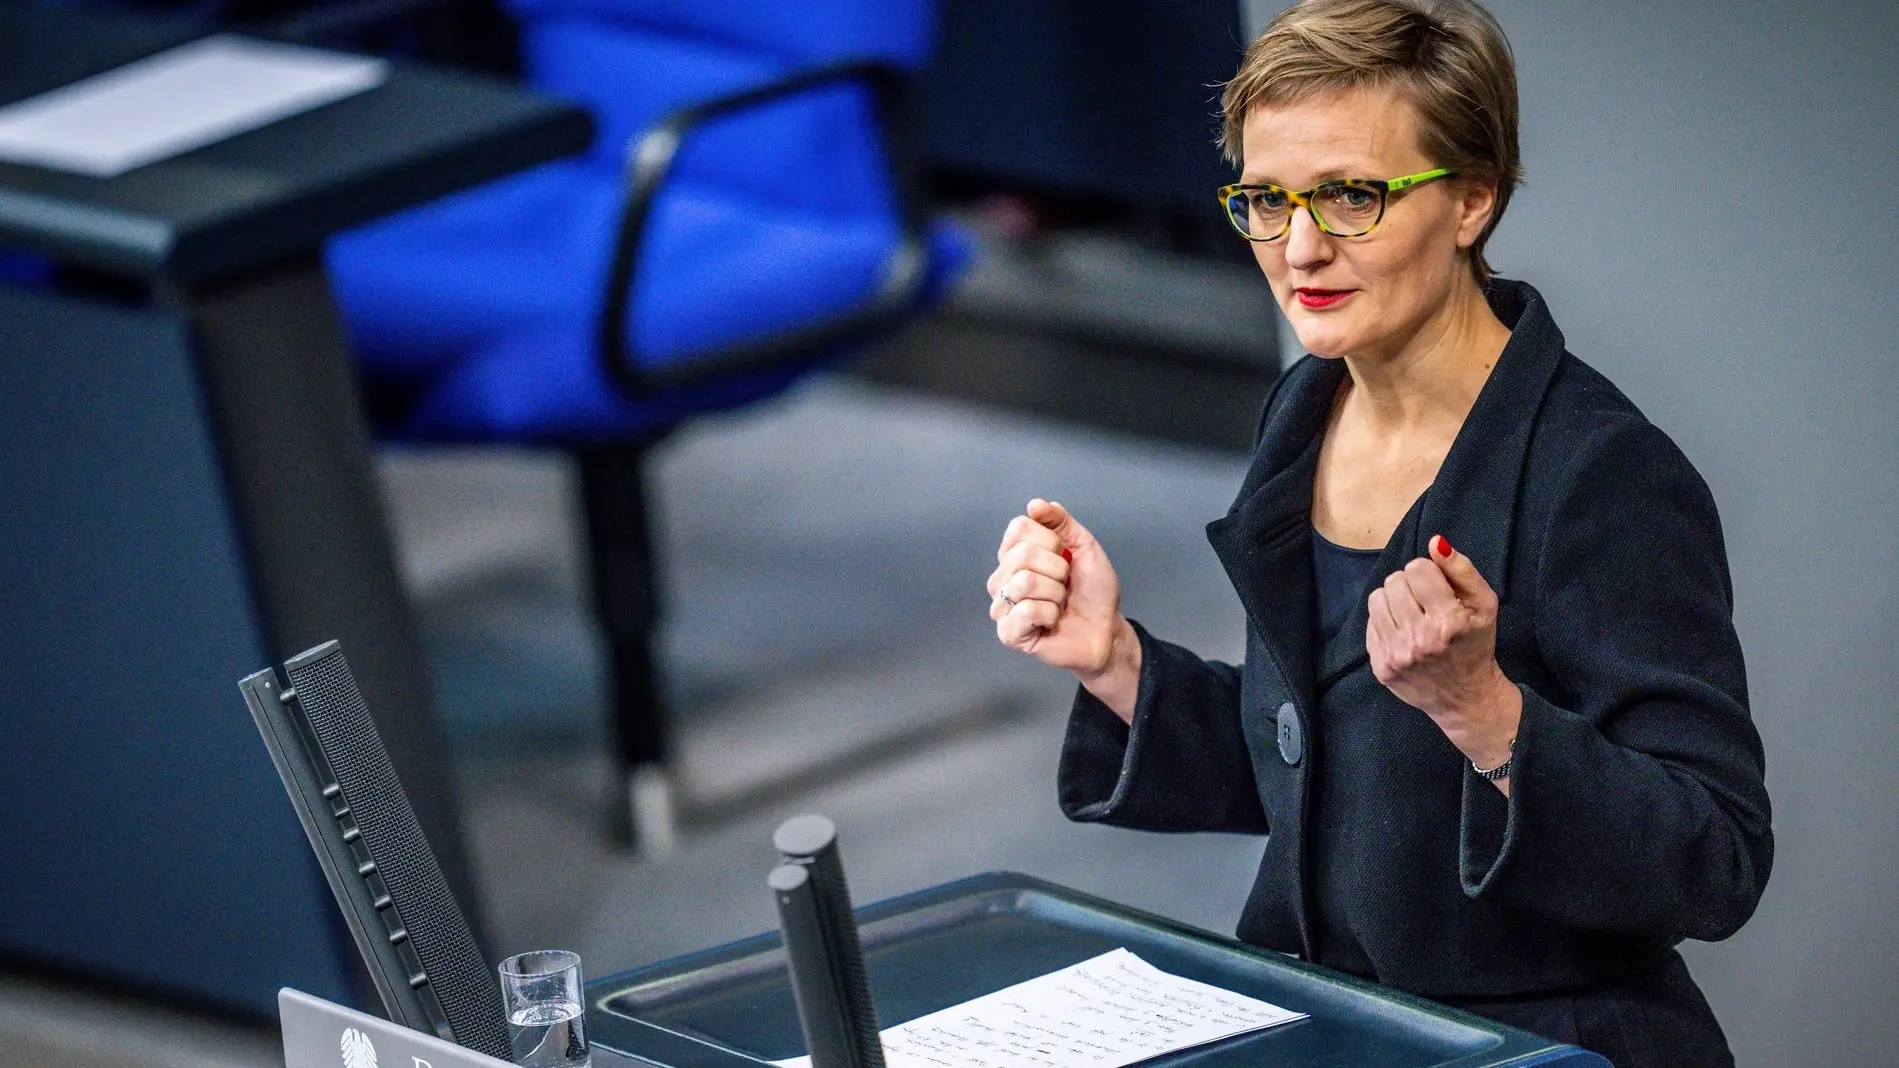 Franziska Brantner spricht im Plenarsaal im Deutschen Bundestag.